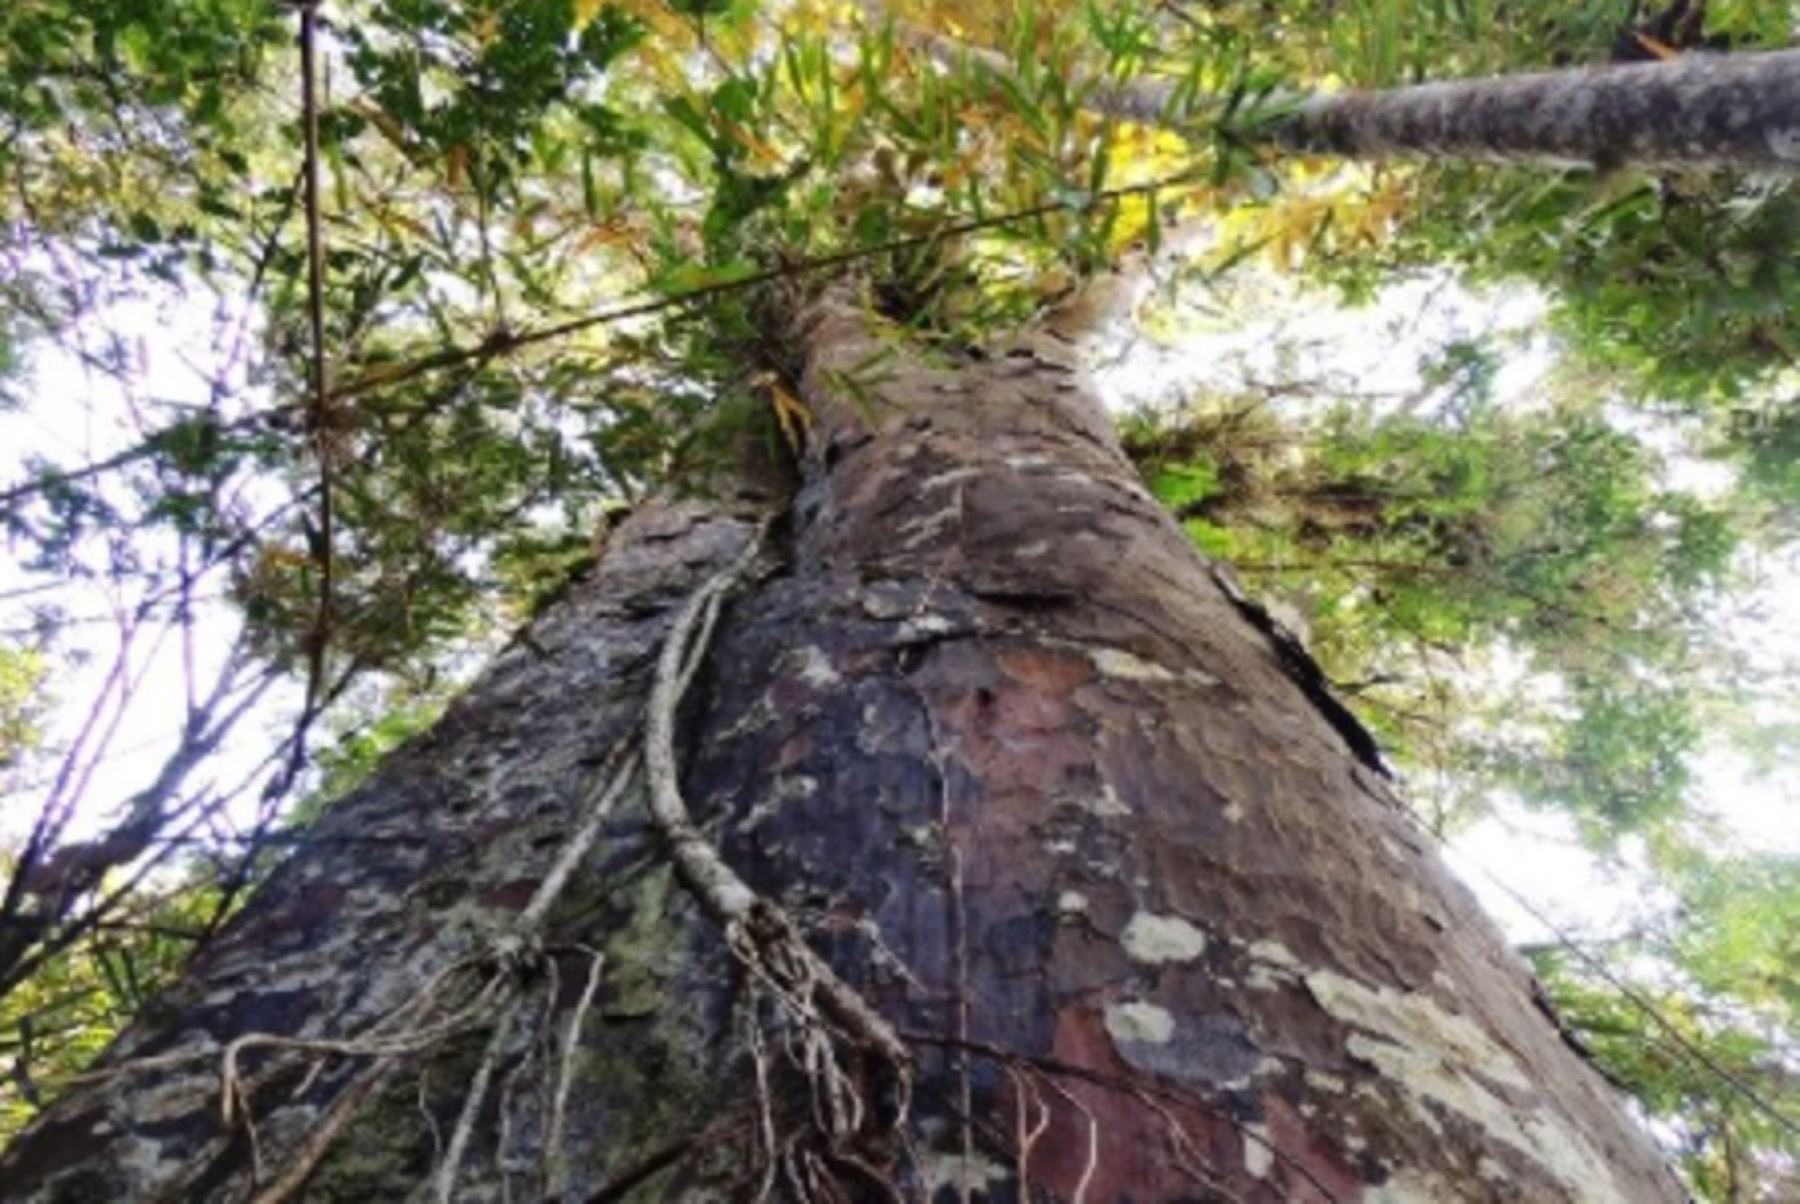 El árbol del romerillo es uno de los más altos de los bosques de neblina en Cajamarca y puede crecer entre 30 y 45 metros de altura, con un diámetro de tronco que va de 50 a 1.80 centímetros.